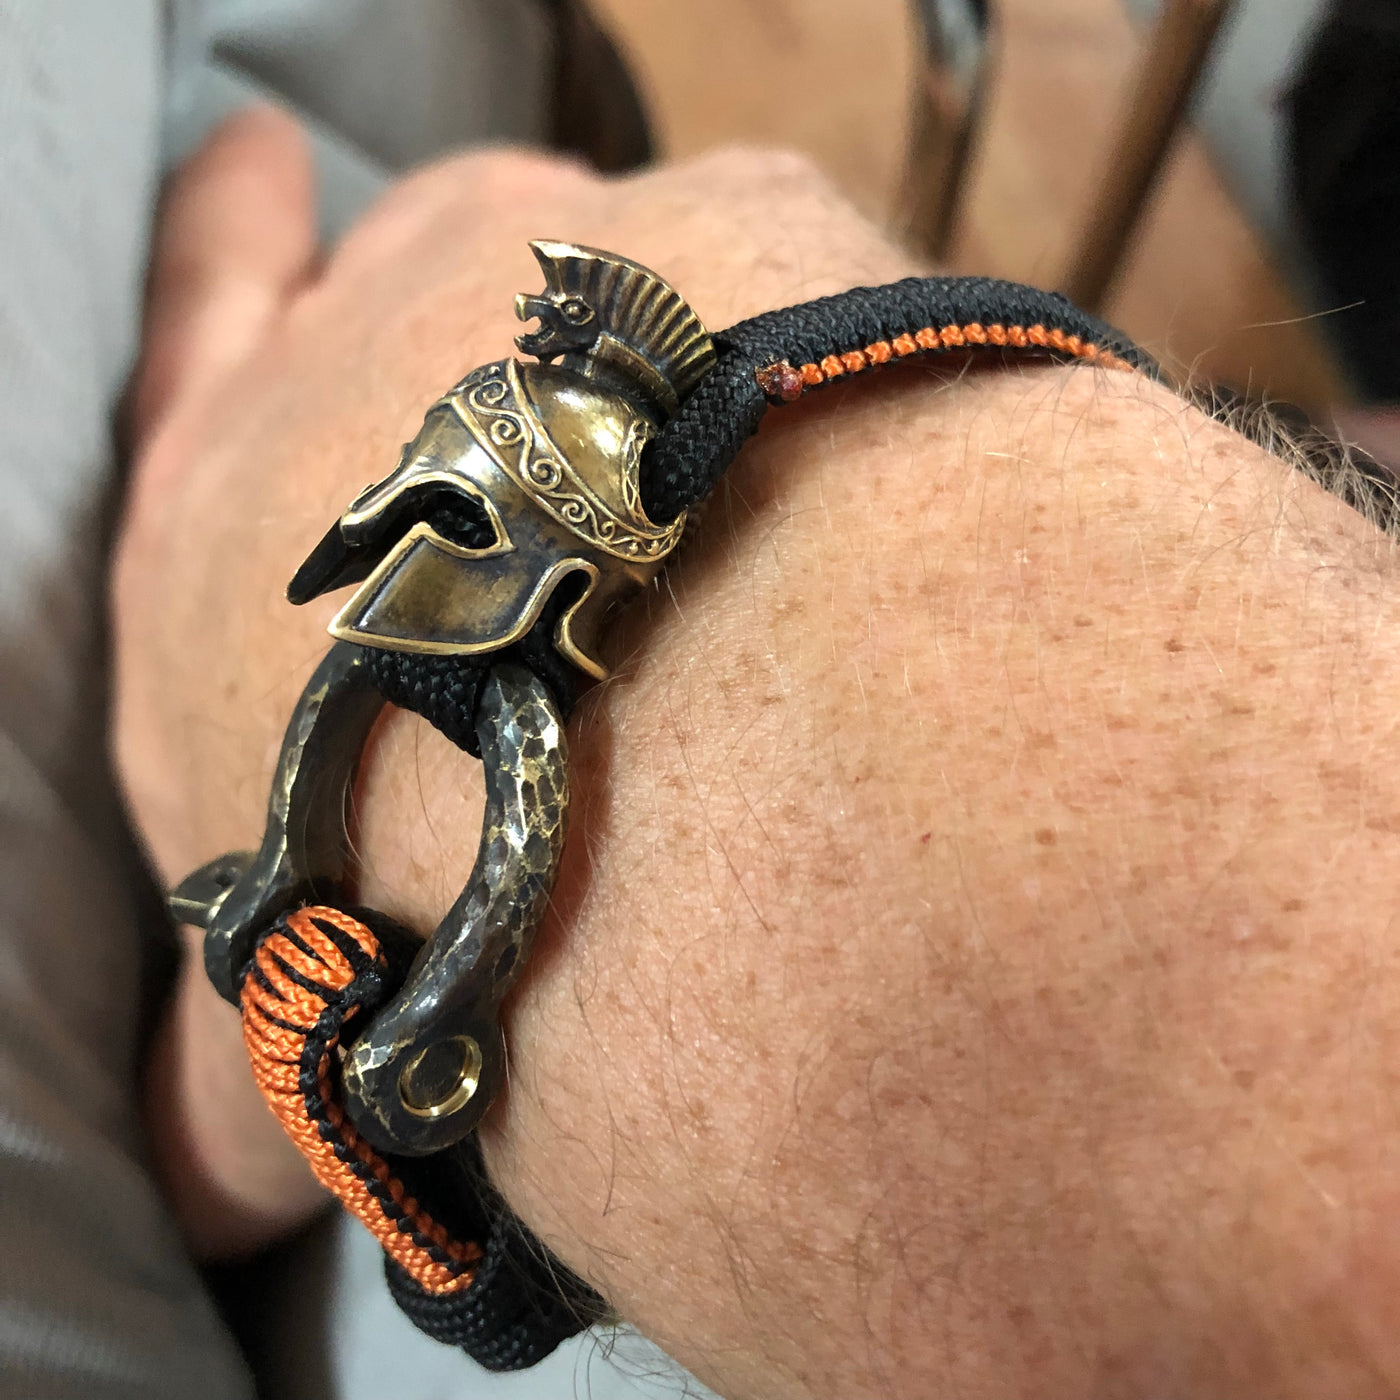 The Zeus bracelet